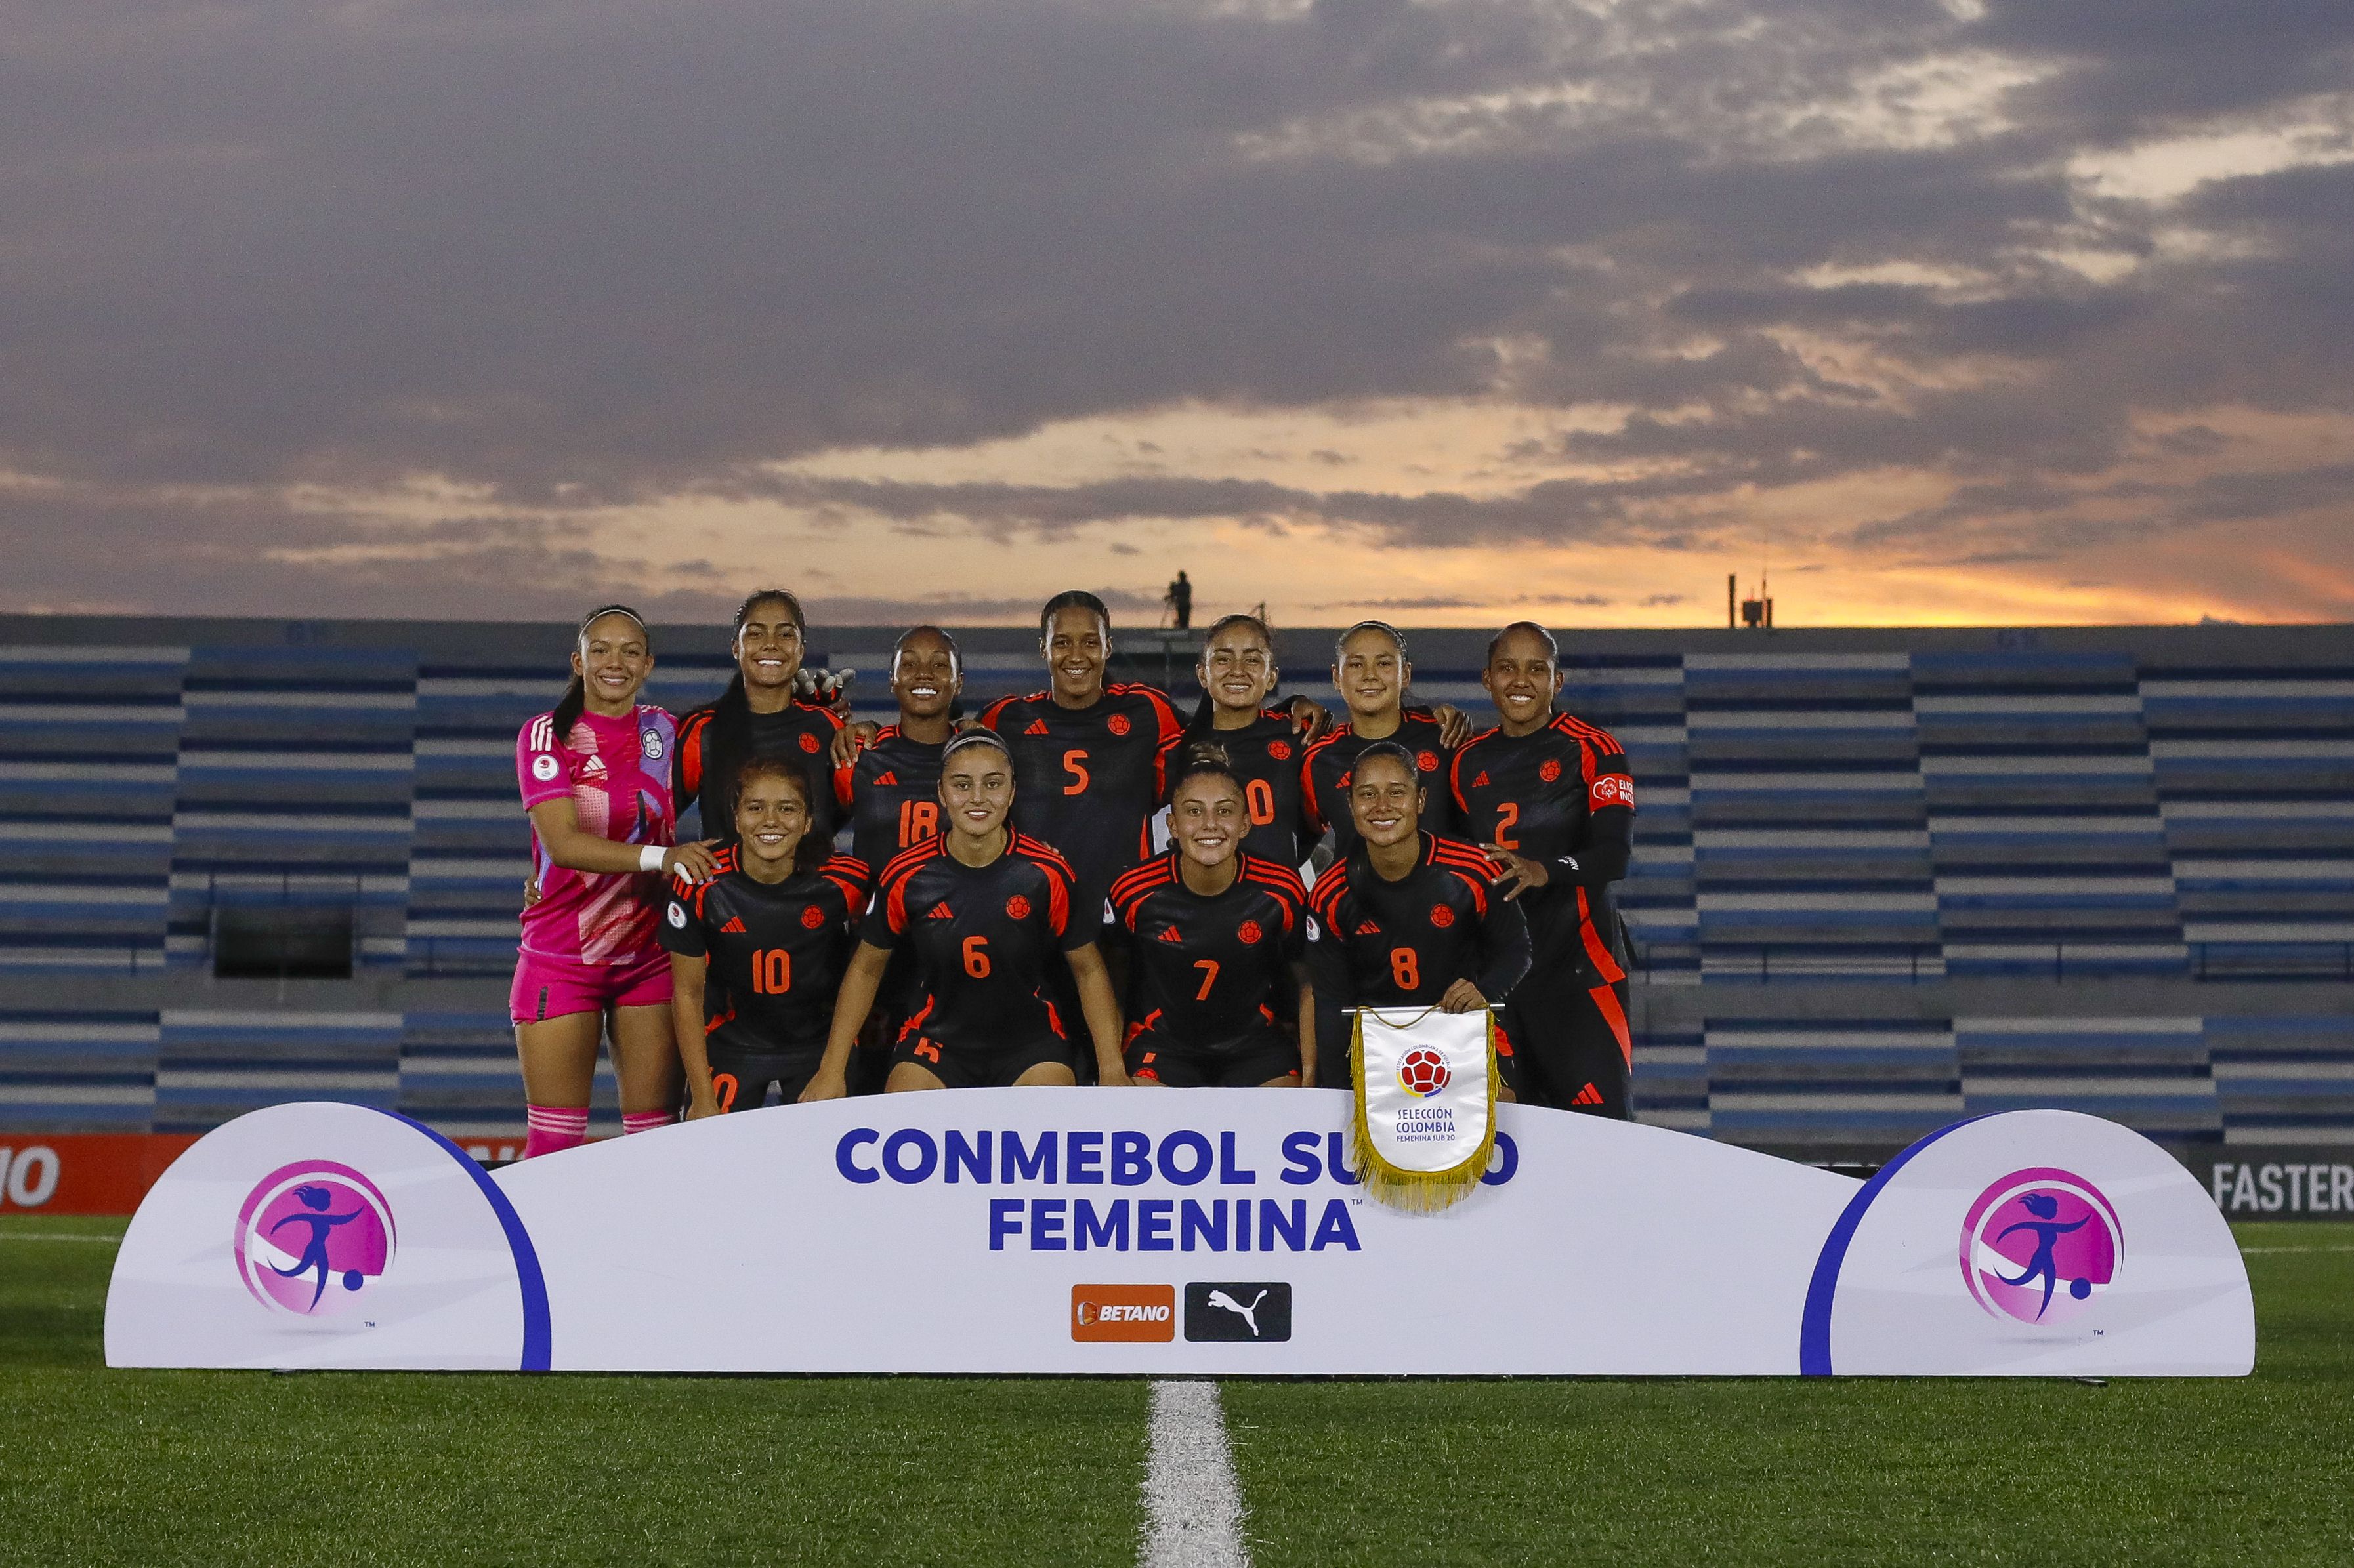 La selección Colombia Femenina sumó 12 puntos de 12 posibles en la fase de grupos del Campeonato Sudamericano Femenino sub-20 - crédito Conmebol